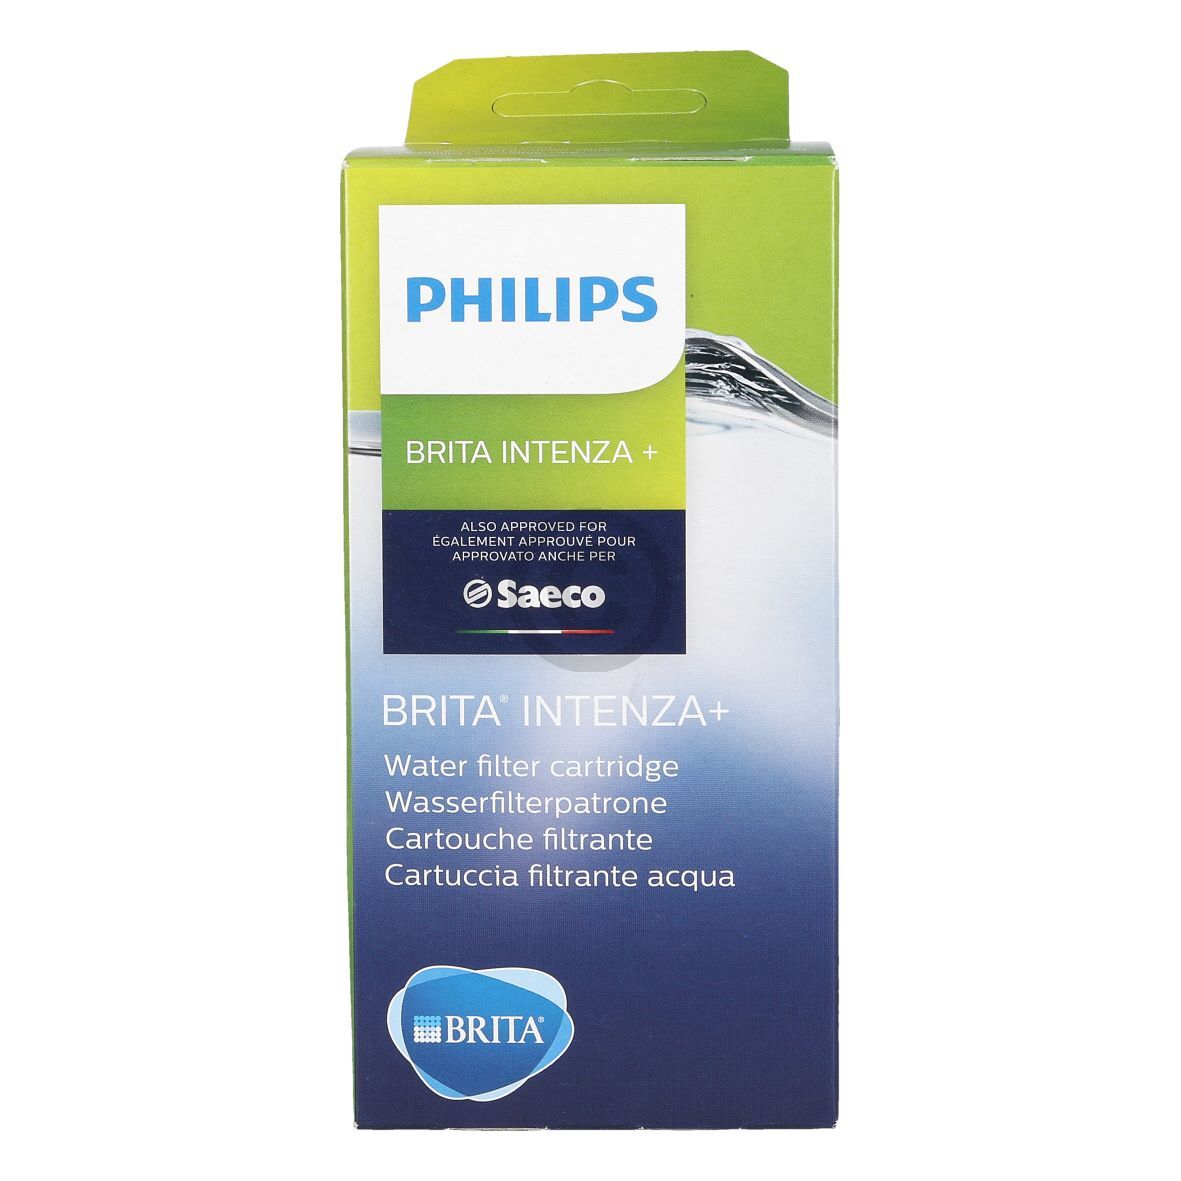 10 Wasser Filter Wasserfilter für Brita Intenza PLUS Saeco Philips CA6702/00 